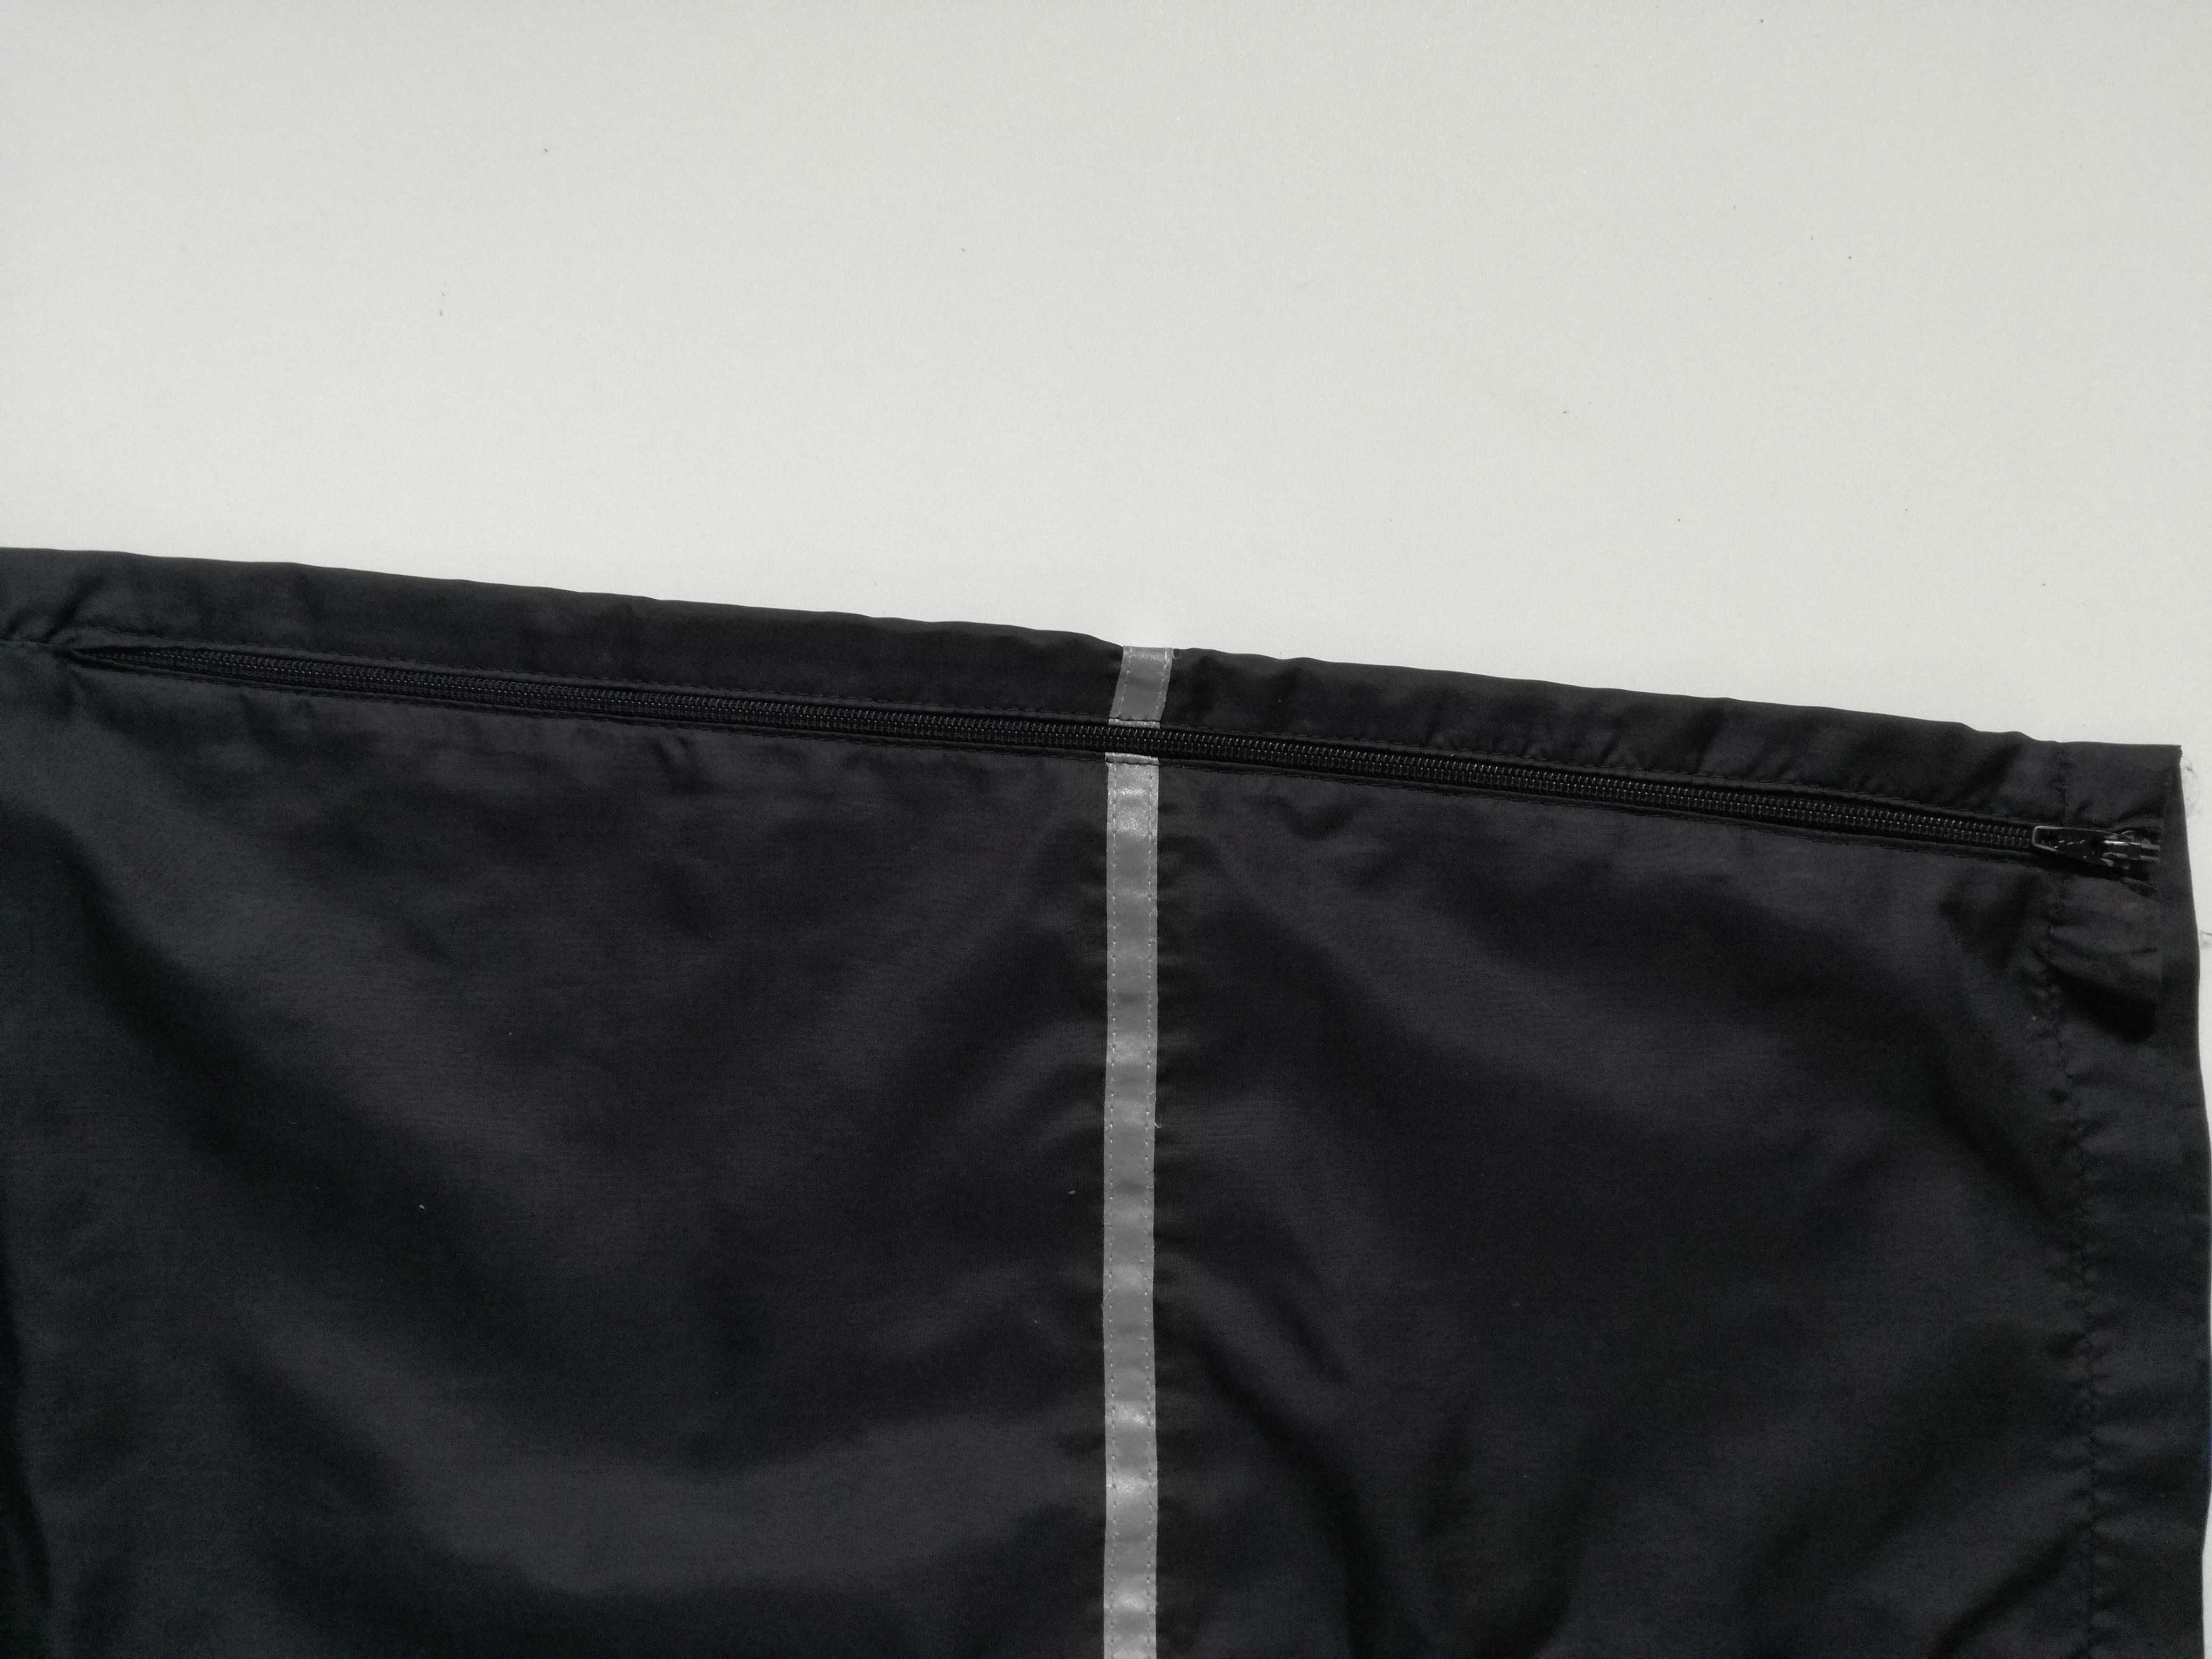 Spodnie sportowe cieniutkie z odblaskami do biegania M/L